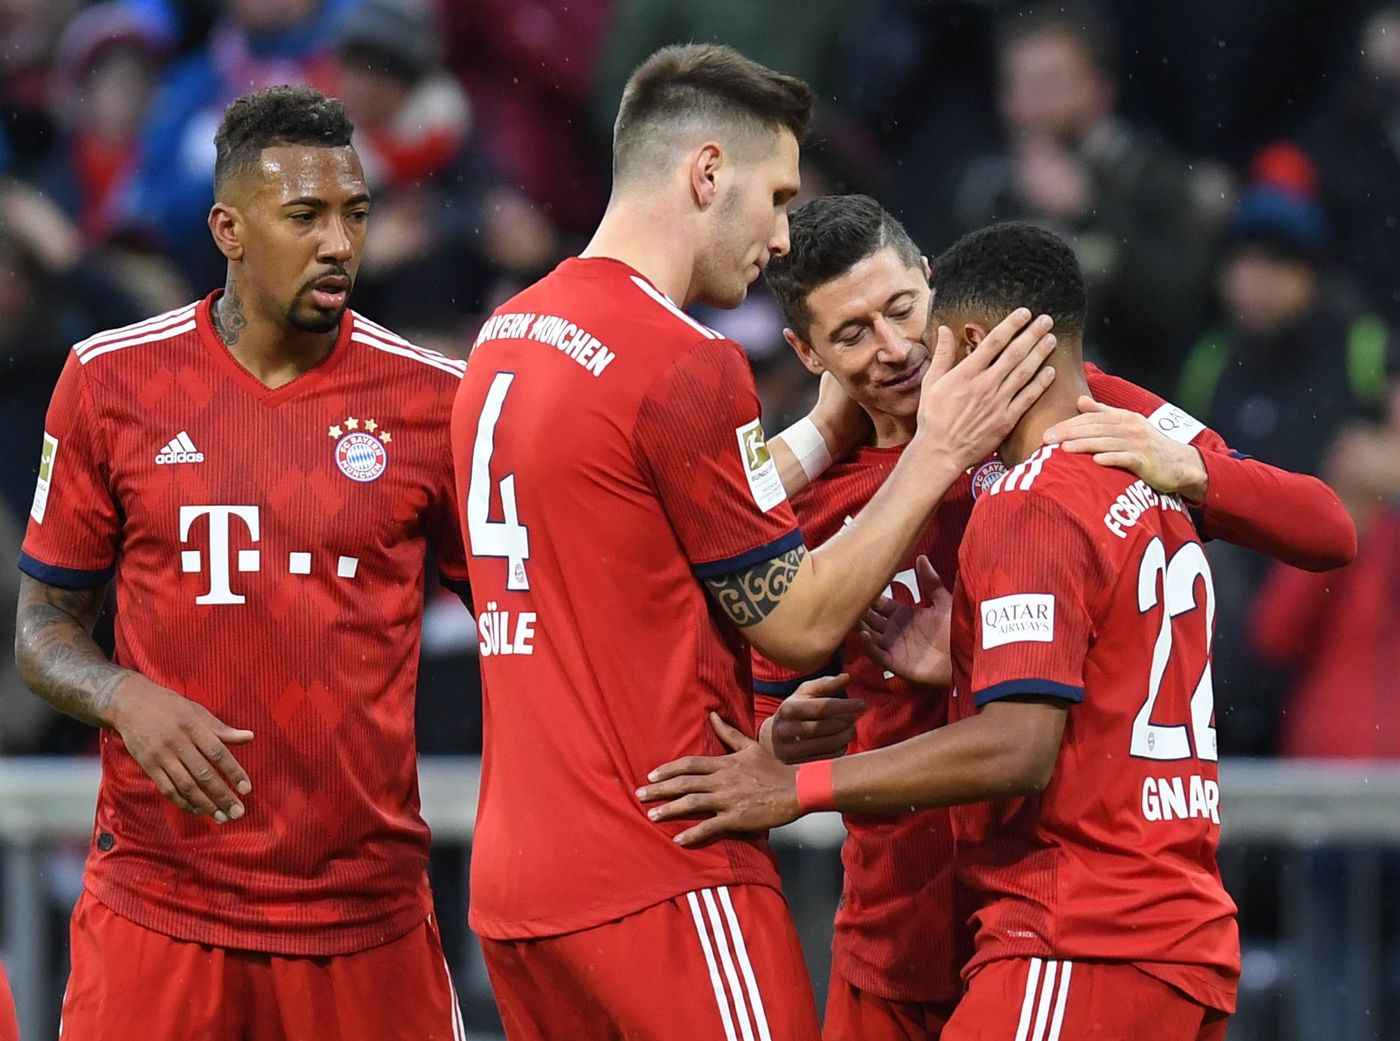 Champions League, Bayern Monaco-Liverpool mercoledì 13 marzo: analisi e pronostico del ritorno degli ottavi del torneo continentale